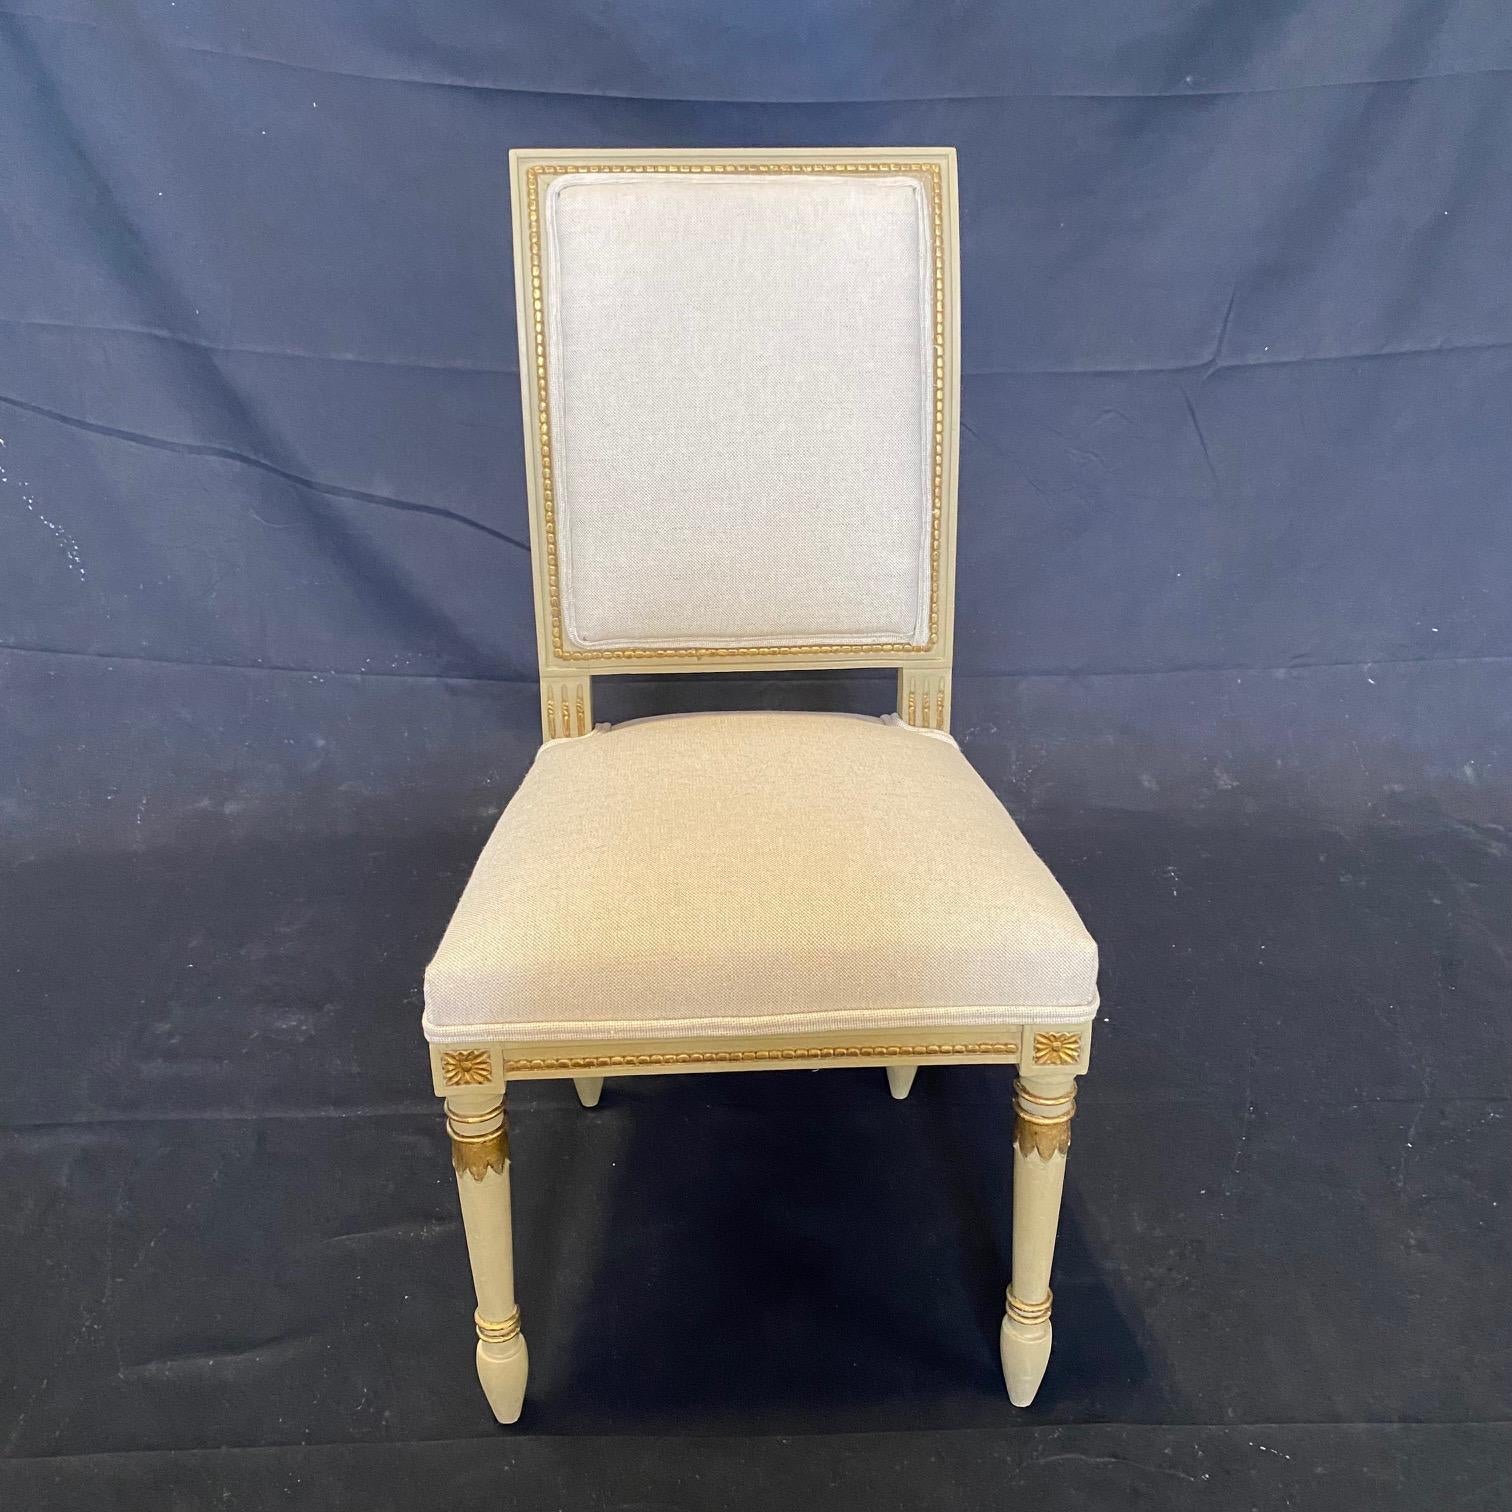 Ensemble de 4 chaises de style Louis XVI à la silhouette élégante et à la structure en bois sculpté, nouvellement tapissées d'un tissu neutre en coton et lin de haute qualité. Les chaises ont un dossier carré et une assise sculptée avec des détails